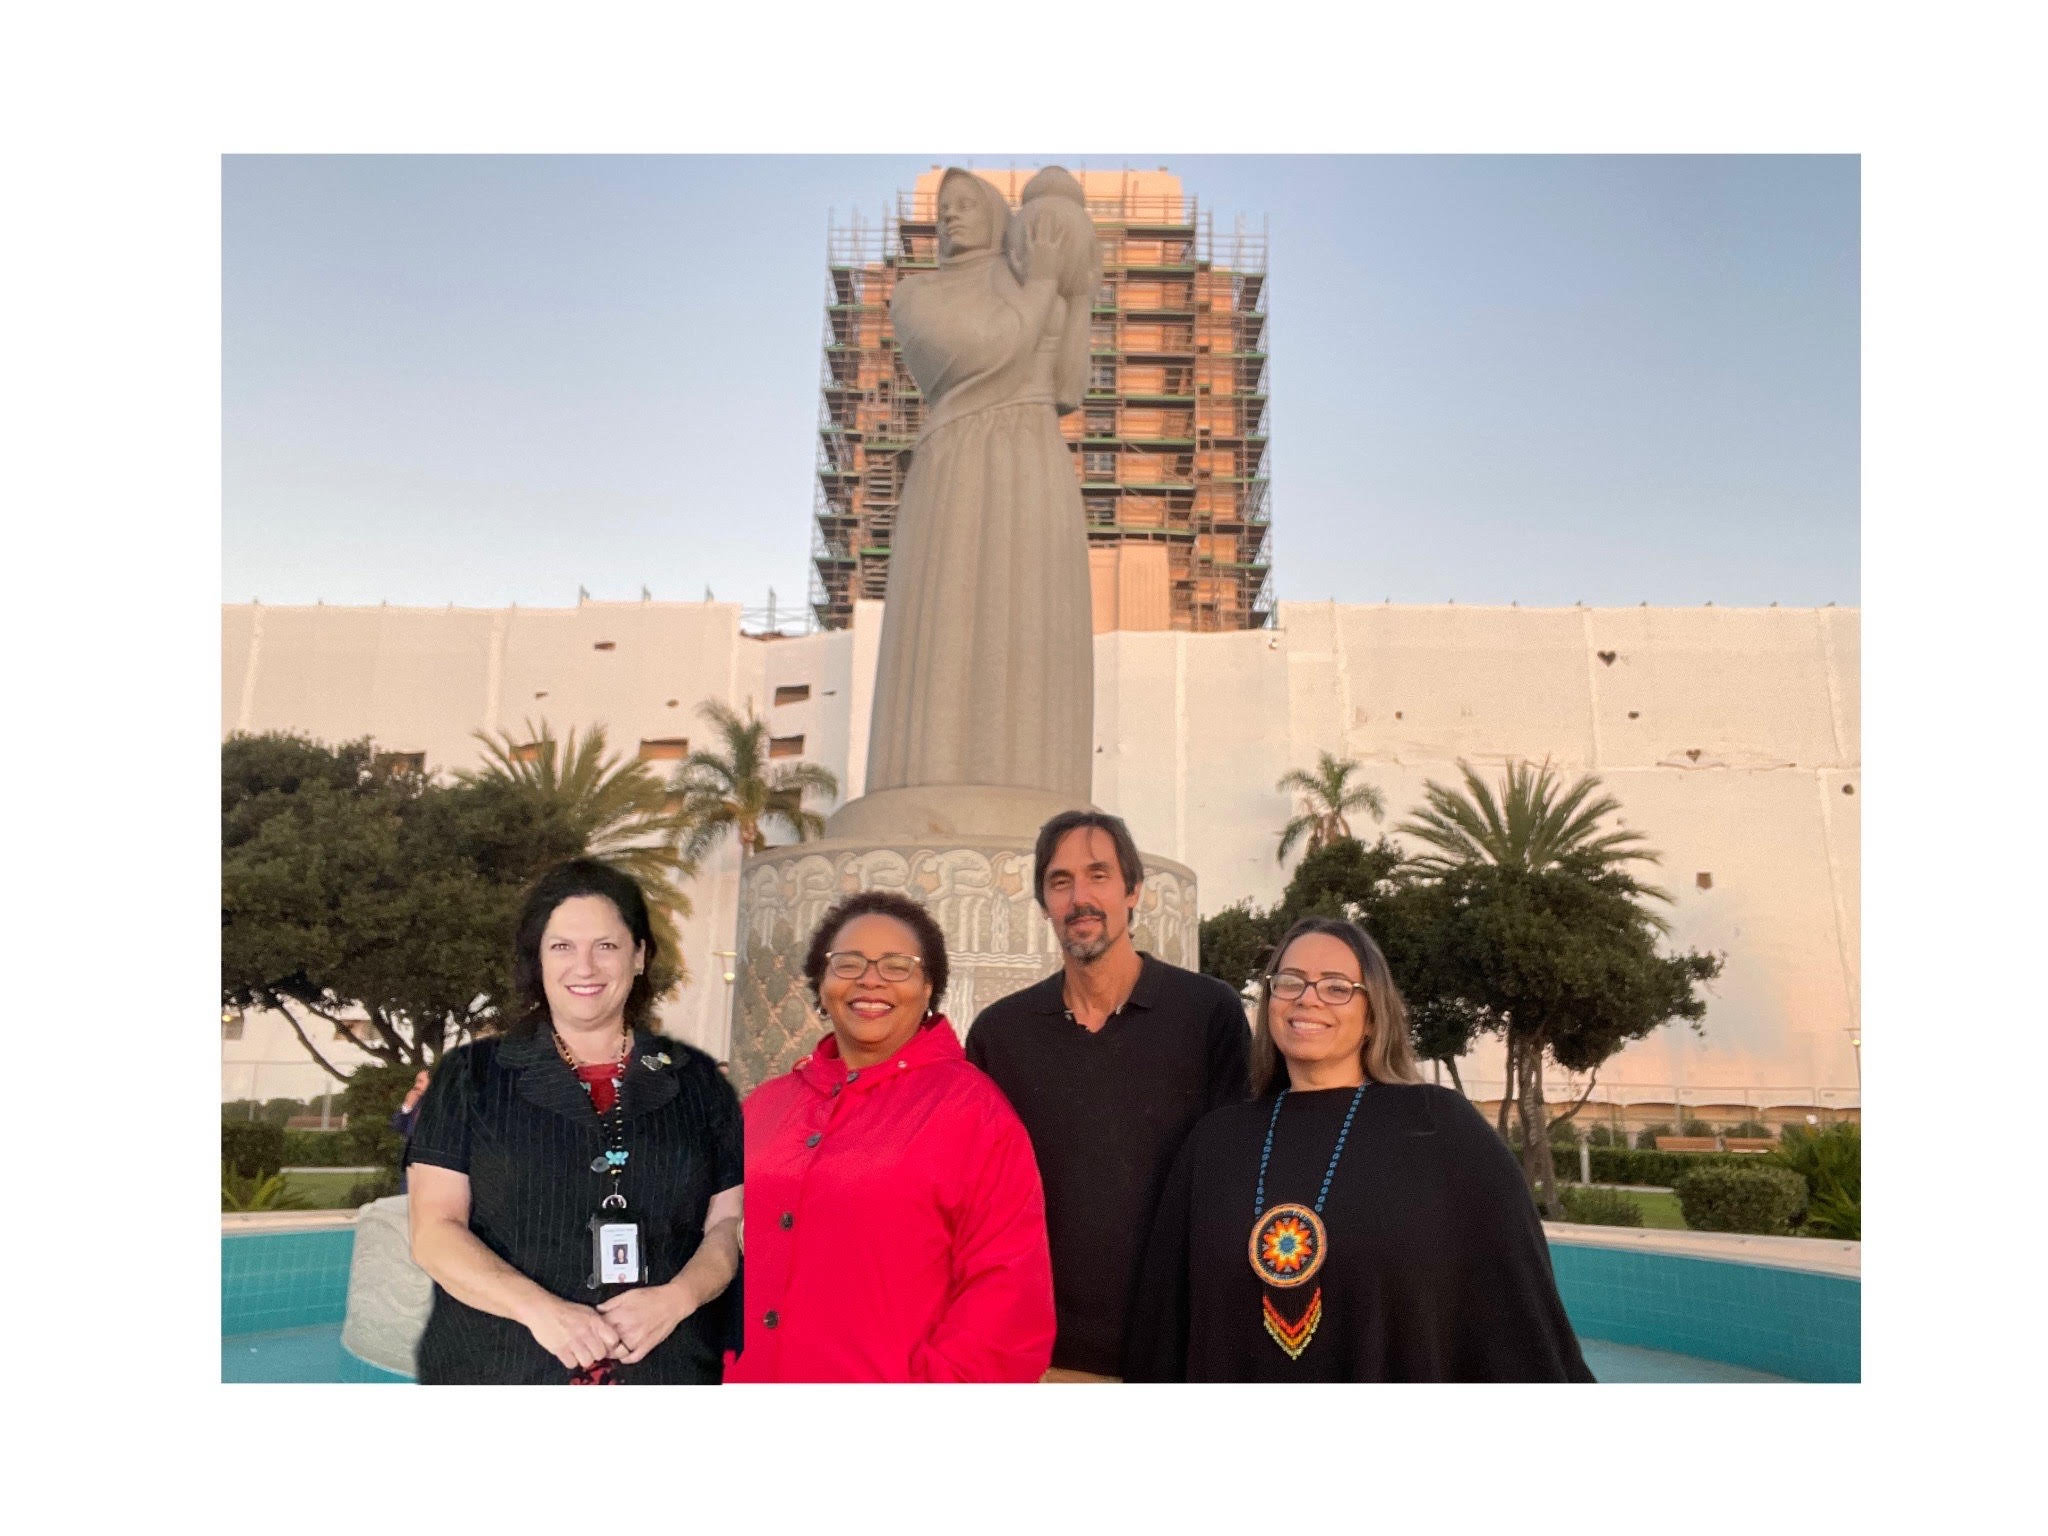 Maria Whitehorse junto a otros tres activistas frente a una estatua gigante de una mujer que sostiene una olla frente al edificio de administración del condado de San Diego. Crédito: María Whitehorse.